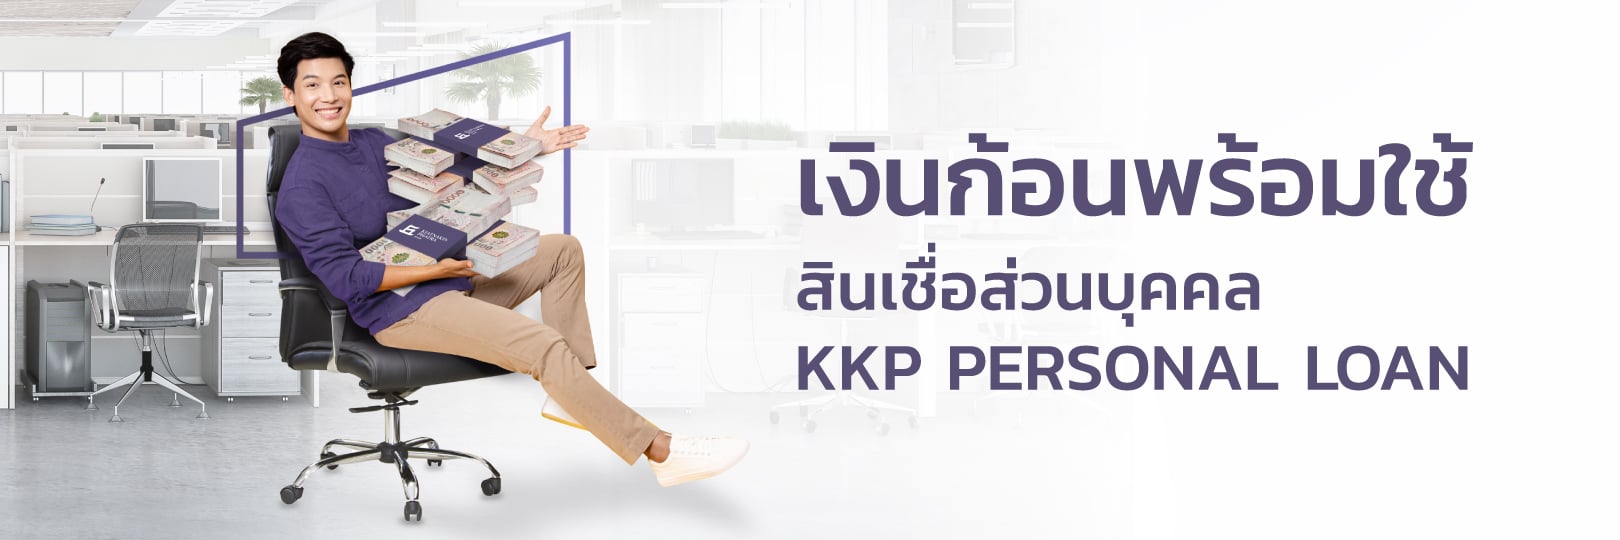 สินเชื่อส่วนบุคคล KKP Personal Loan